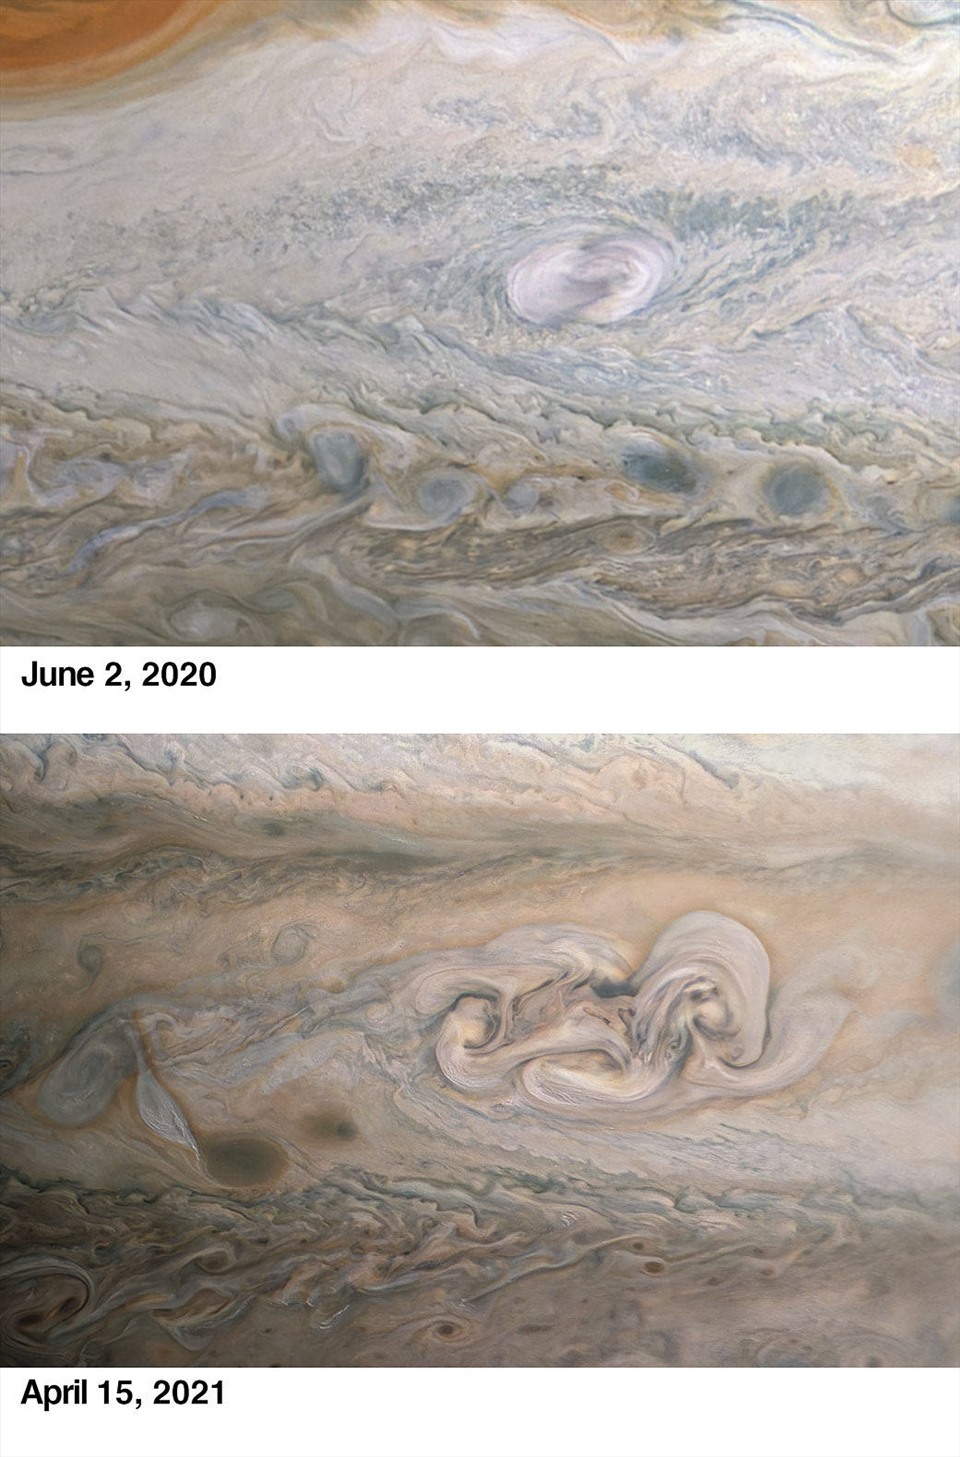 Tàu vũ trụ Juno của NASA ghi lại sự biến đổi của “Clyde's Spot” trên khí quyển sao Mộc trong những bức ảnh chụp cách nhau một năm. Ảnh: NASA.